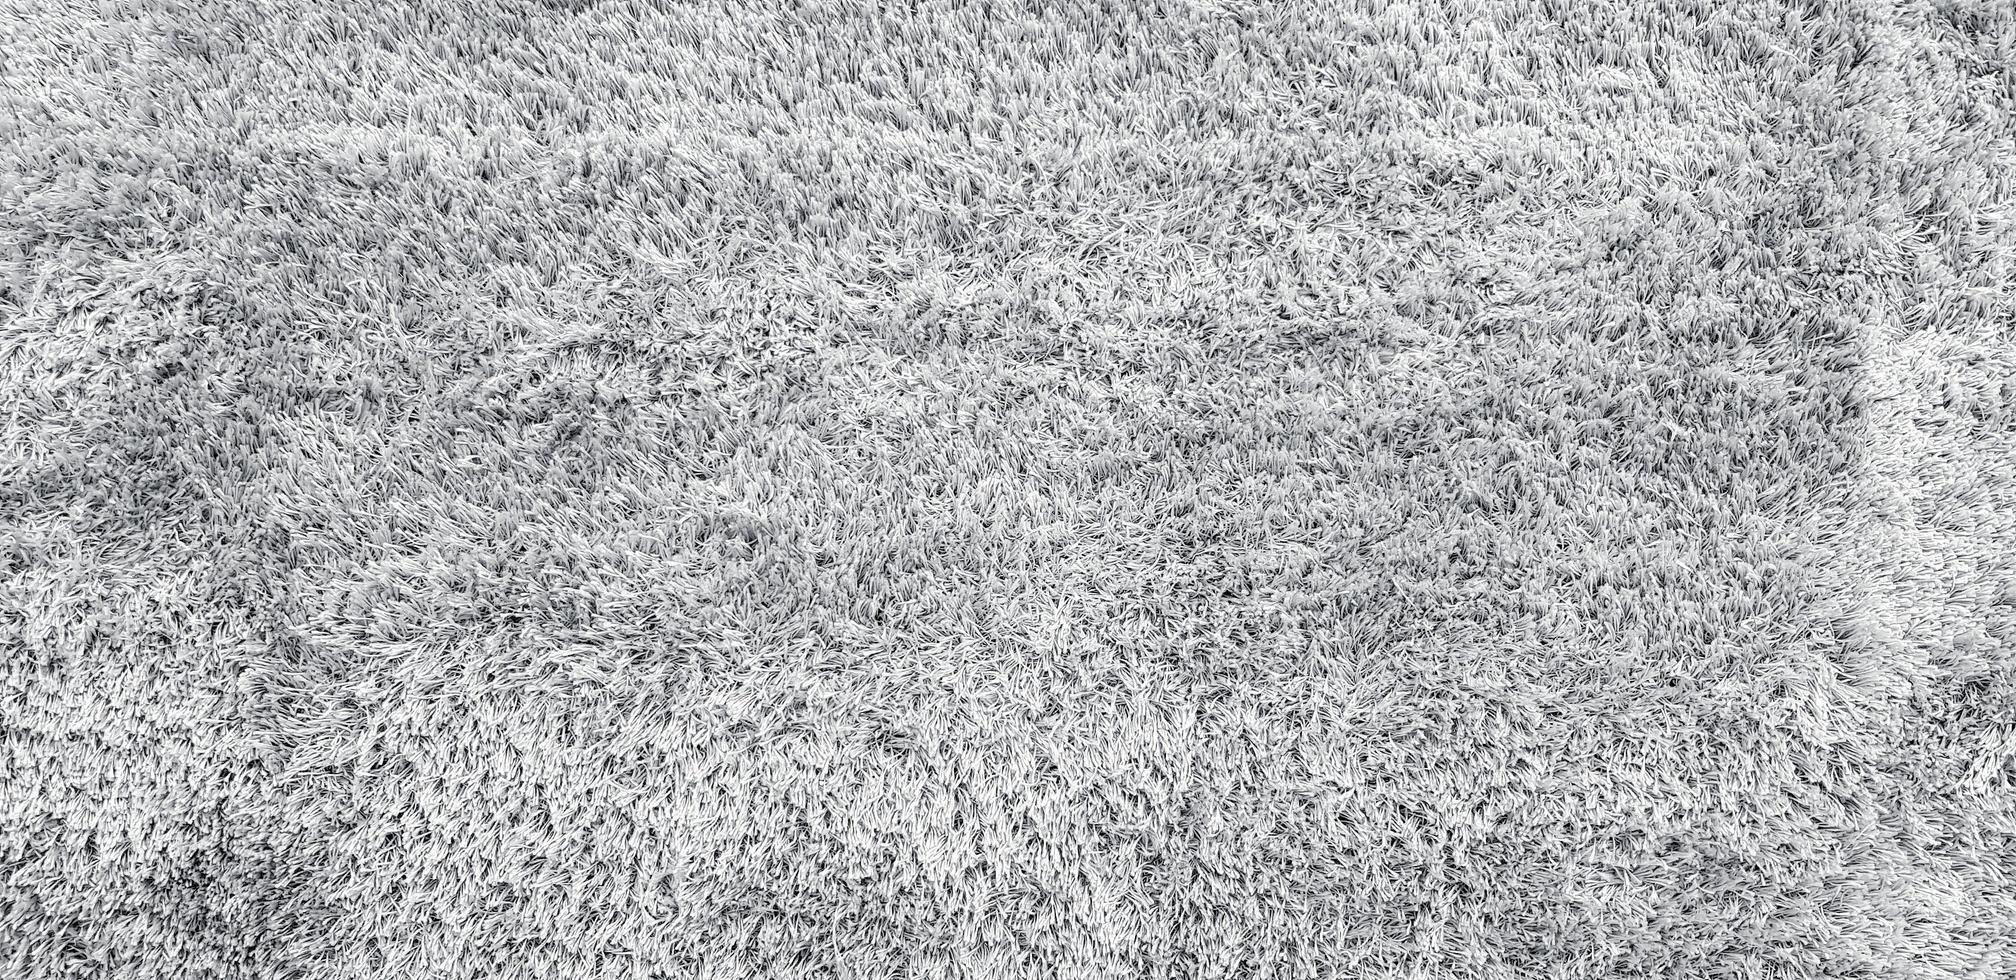 textura de alfombra o alfombra de lana gris o gris para fondo o papel tapiz. material suave y concepto de detalle foto